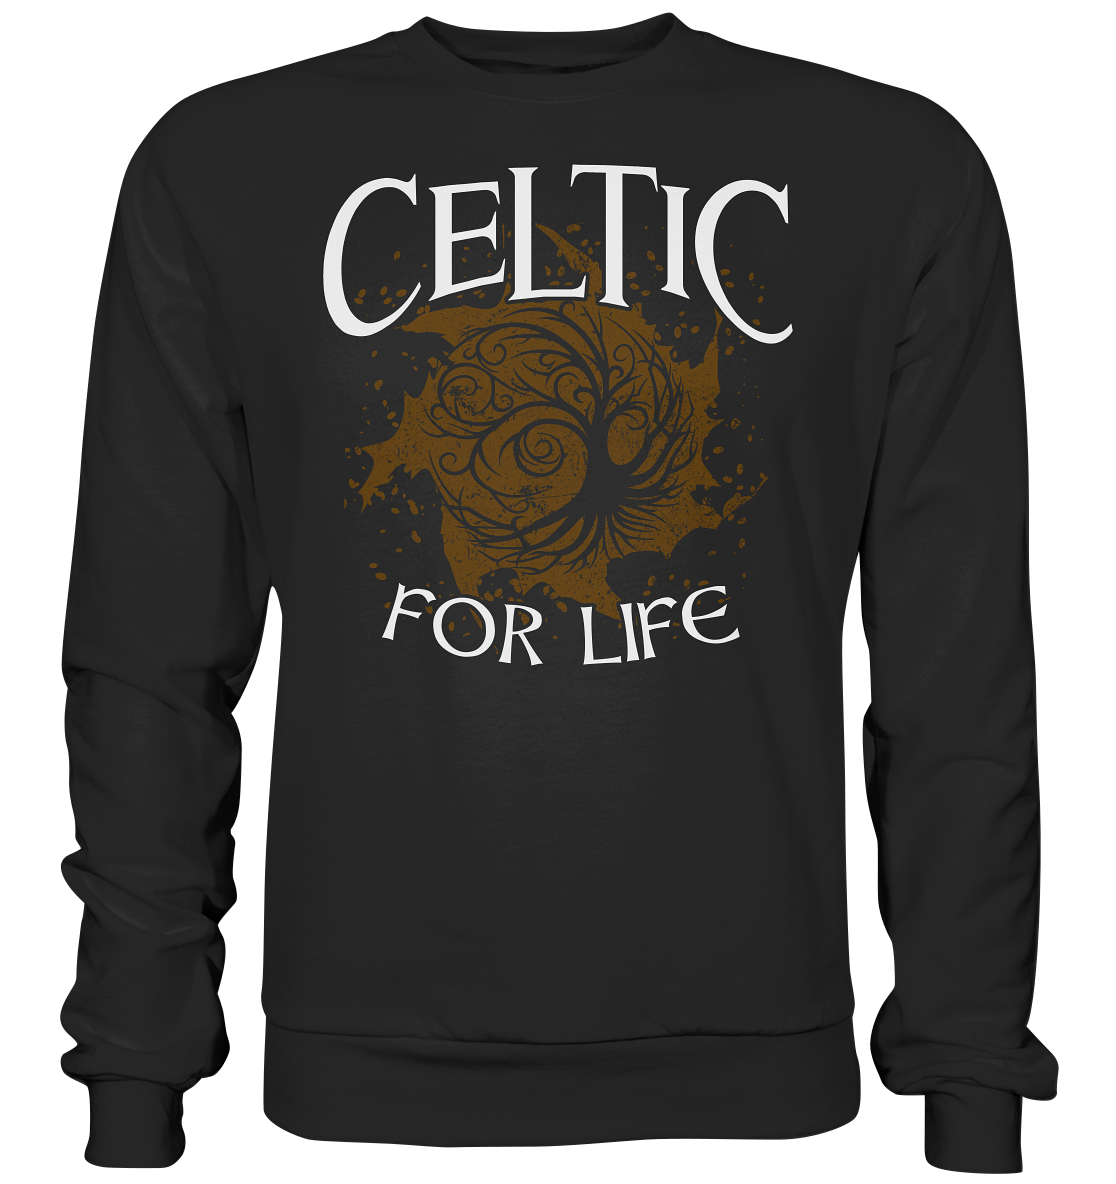 Celtic "For Life" - Premium Sweatshirt